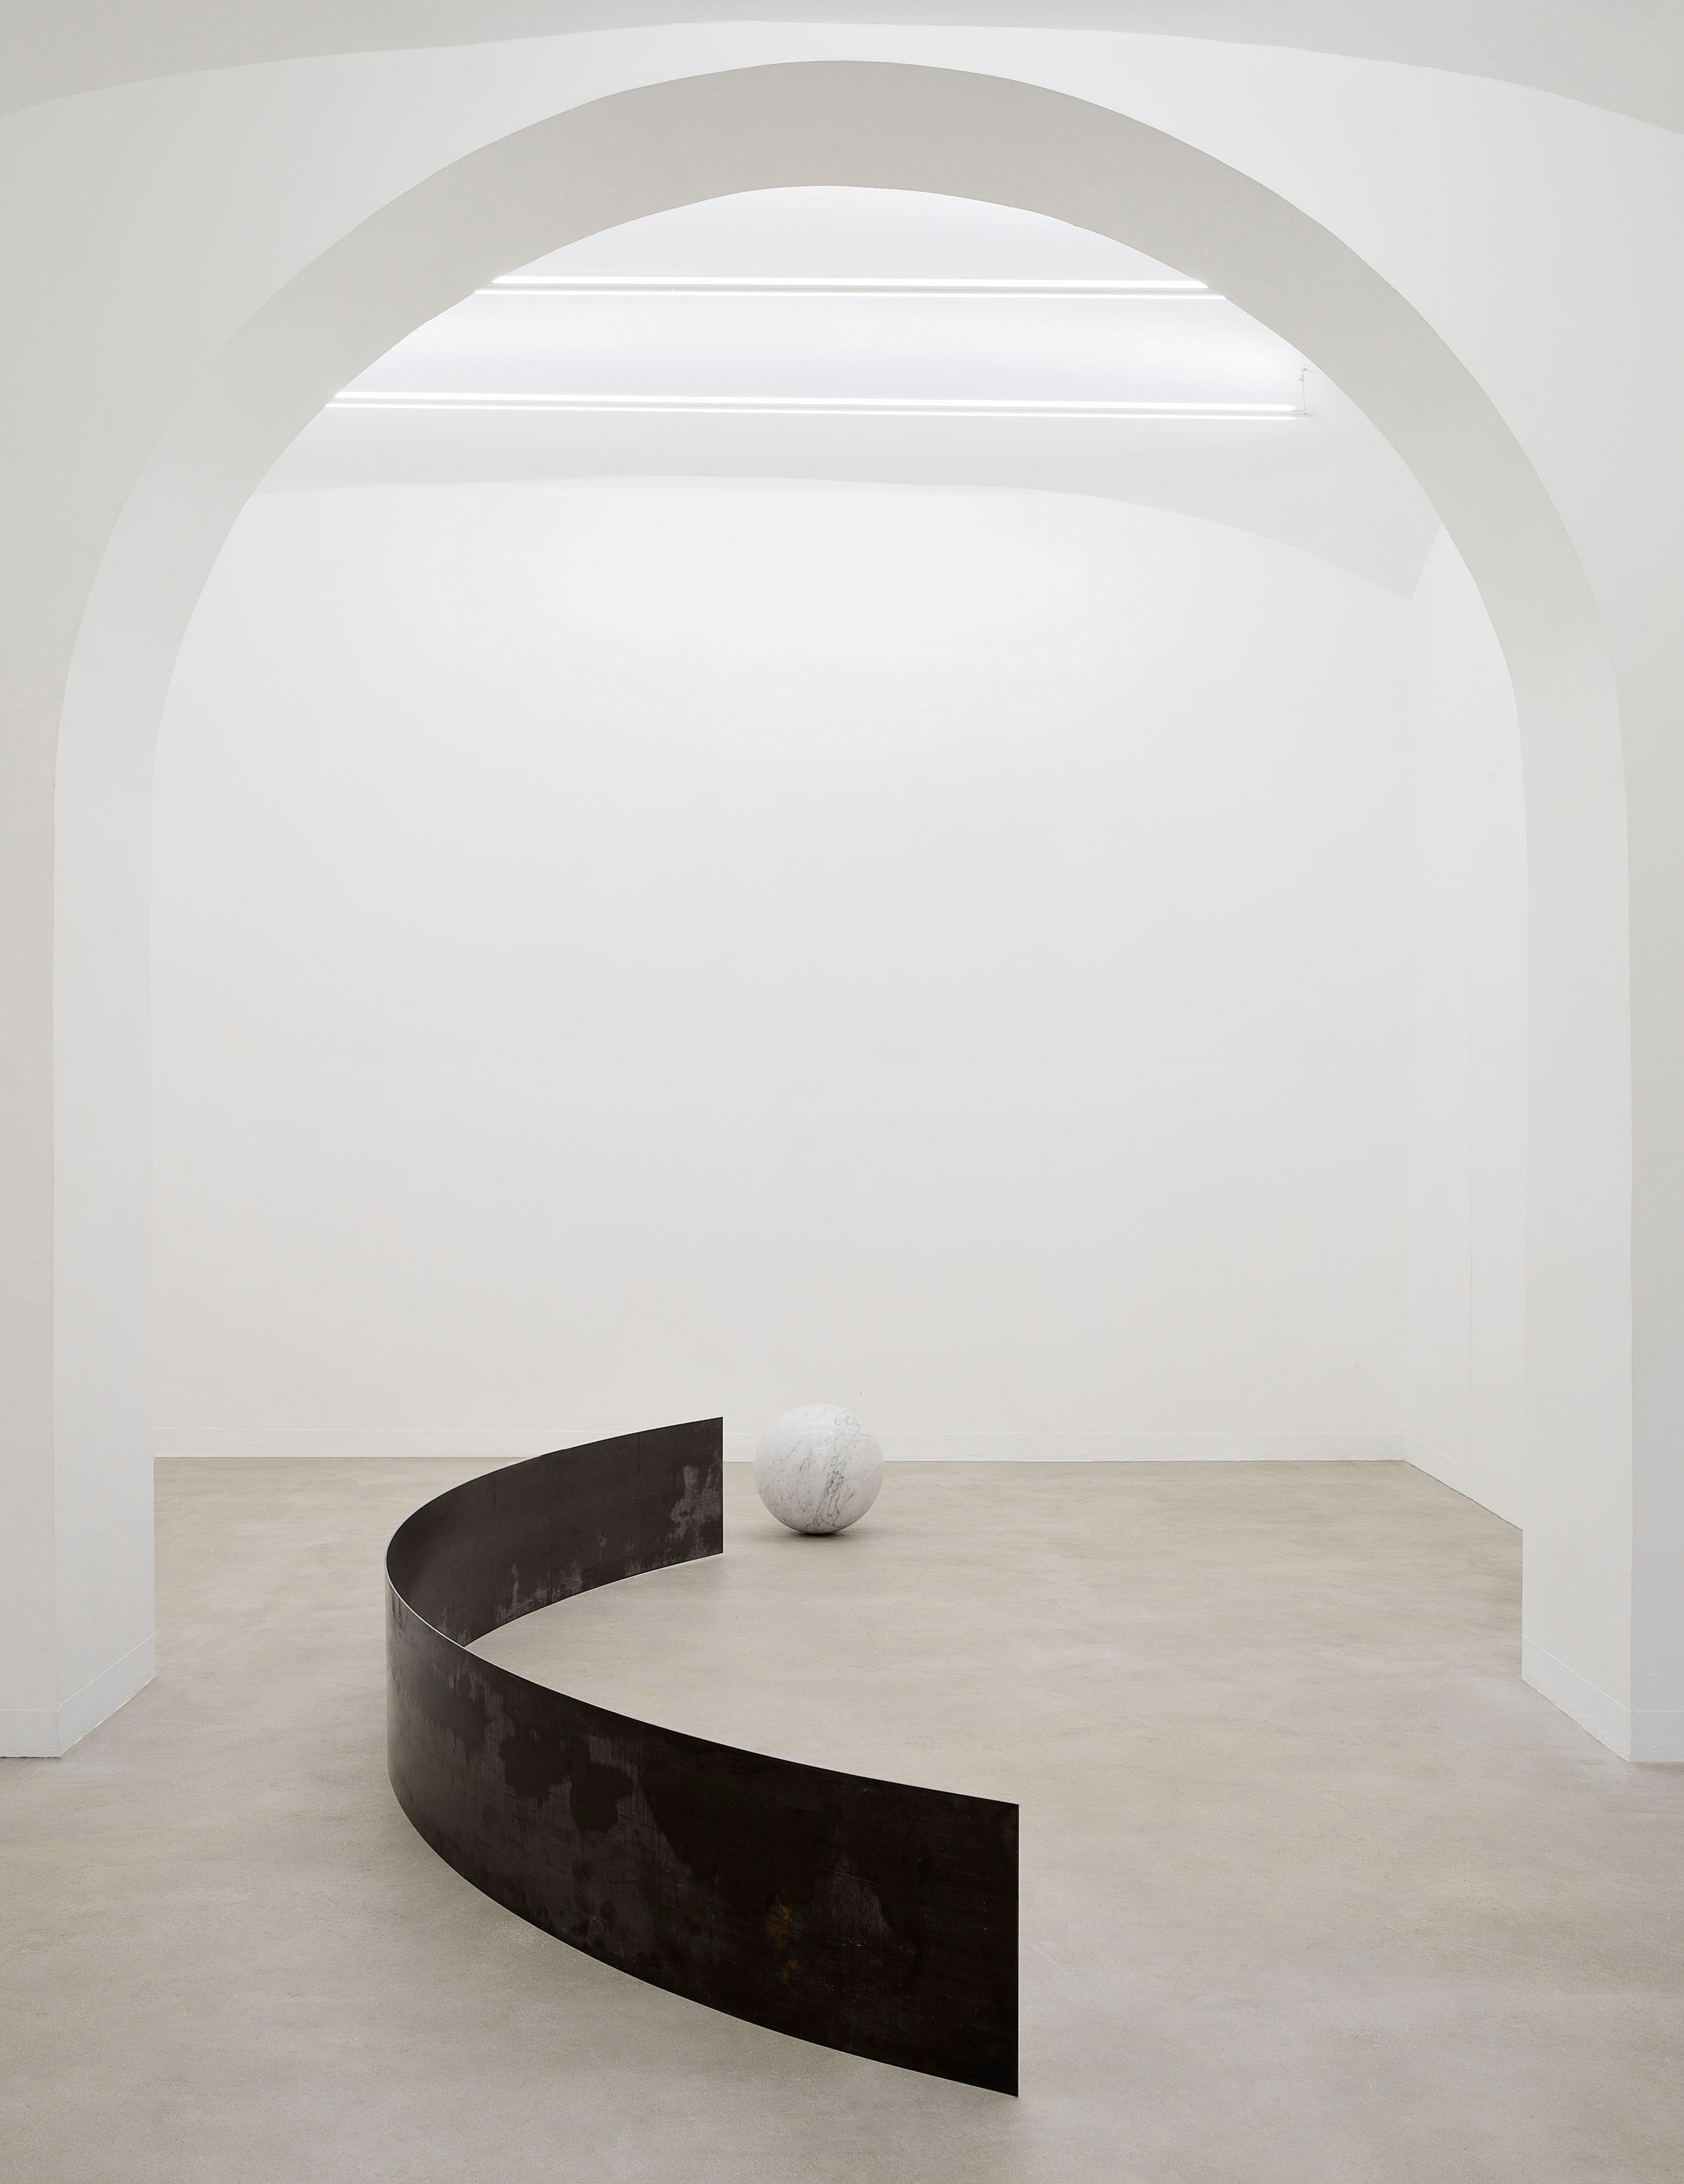 Giulia Marchi, Una pietra sopra, 2022, exhibition view, Matèria, Roma. Courtesy Matèria, Roma. Foto Roberto Apa